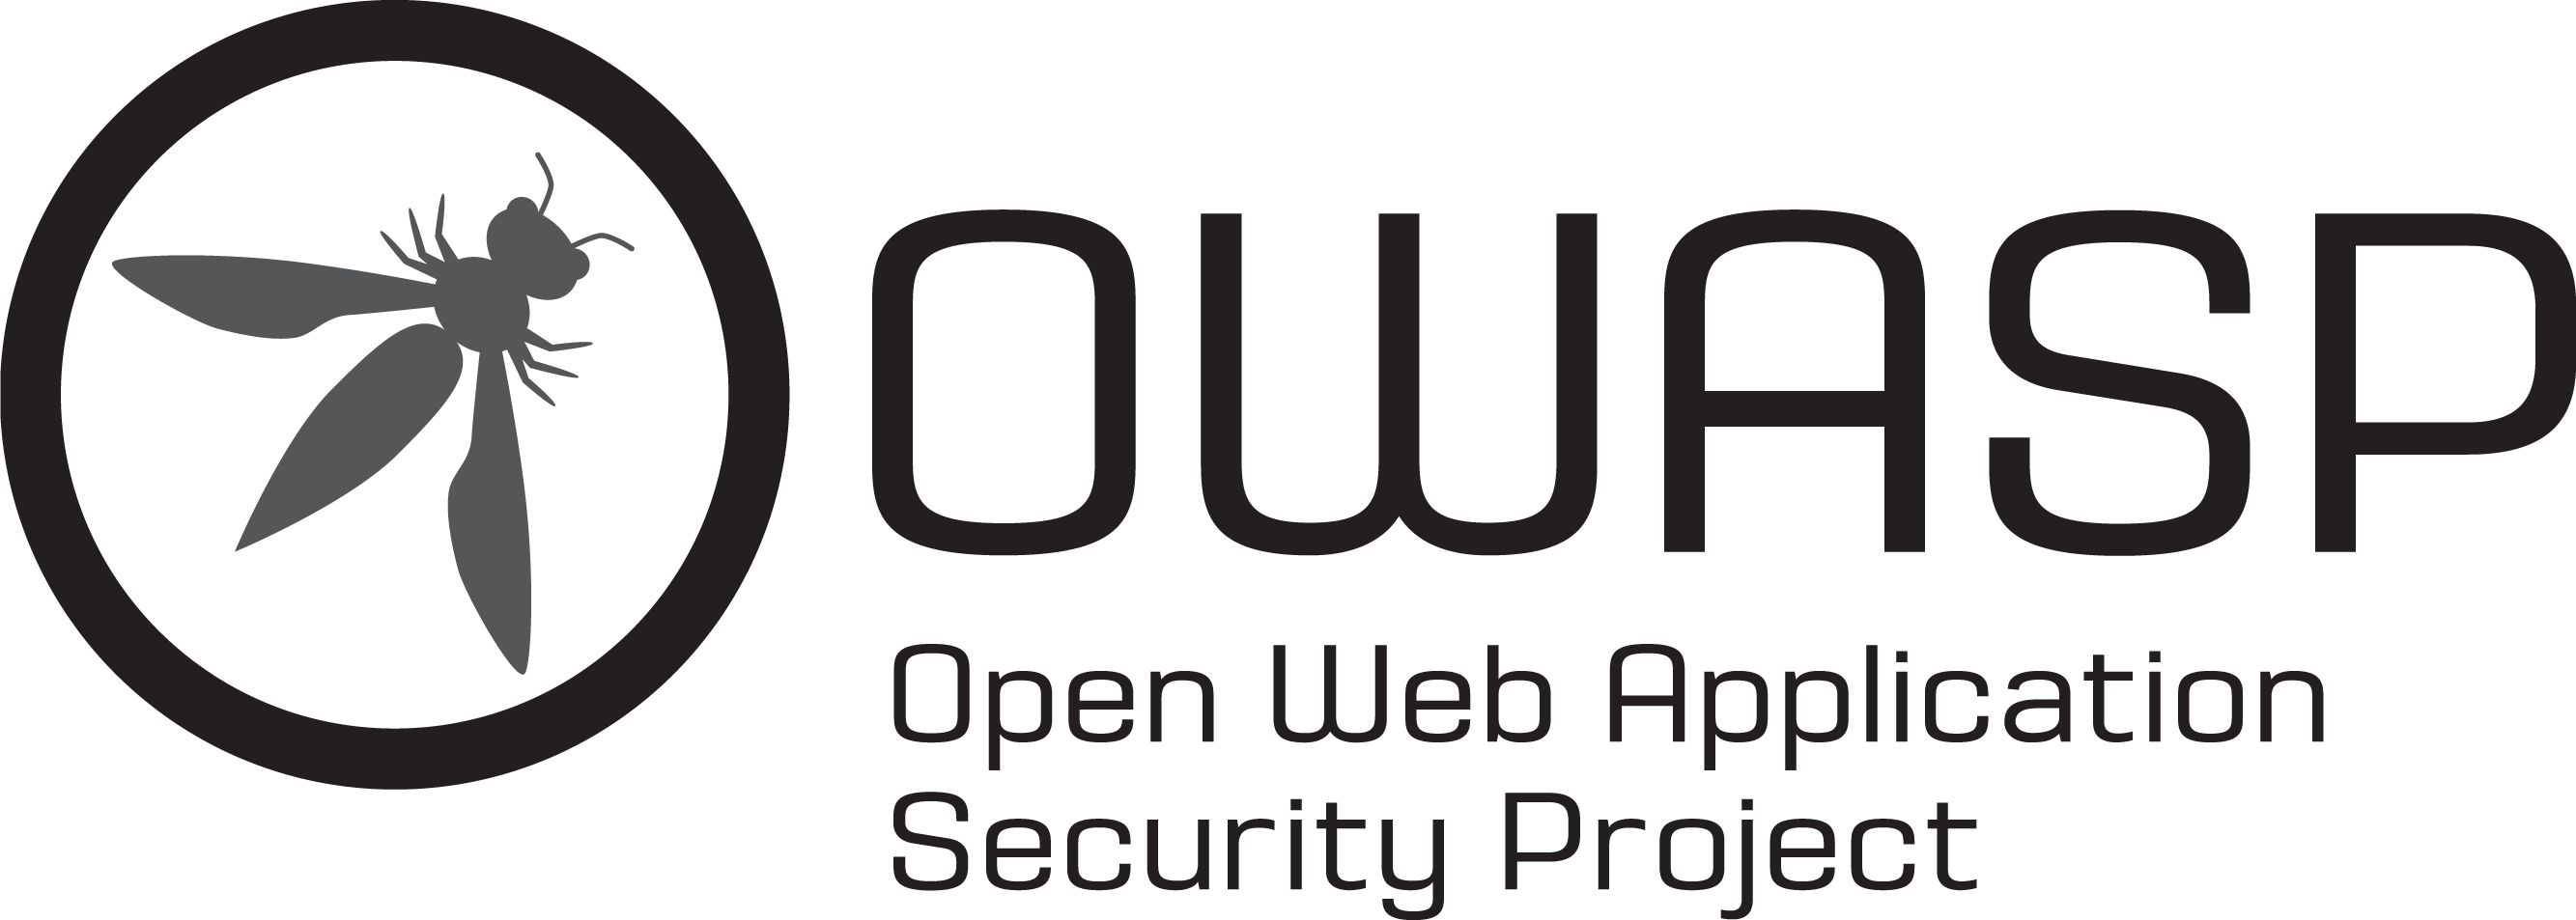 OWASP 2022